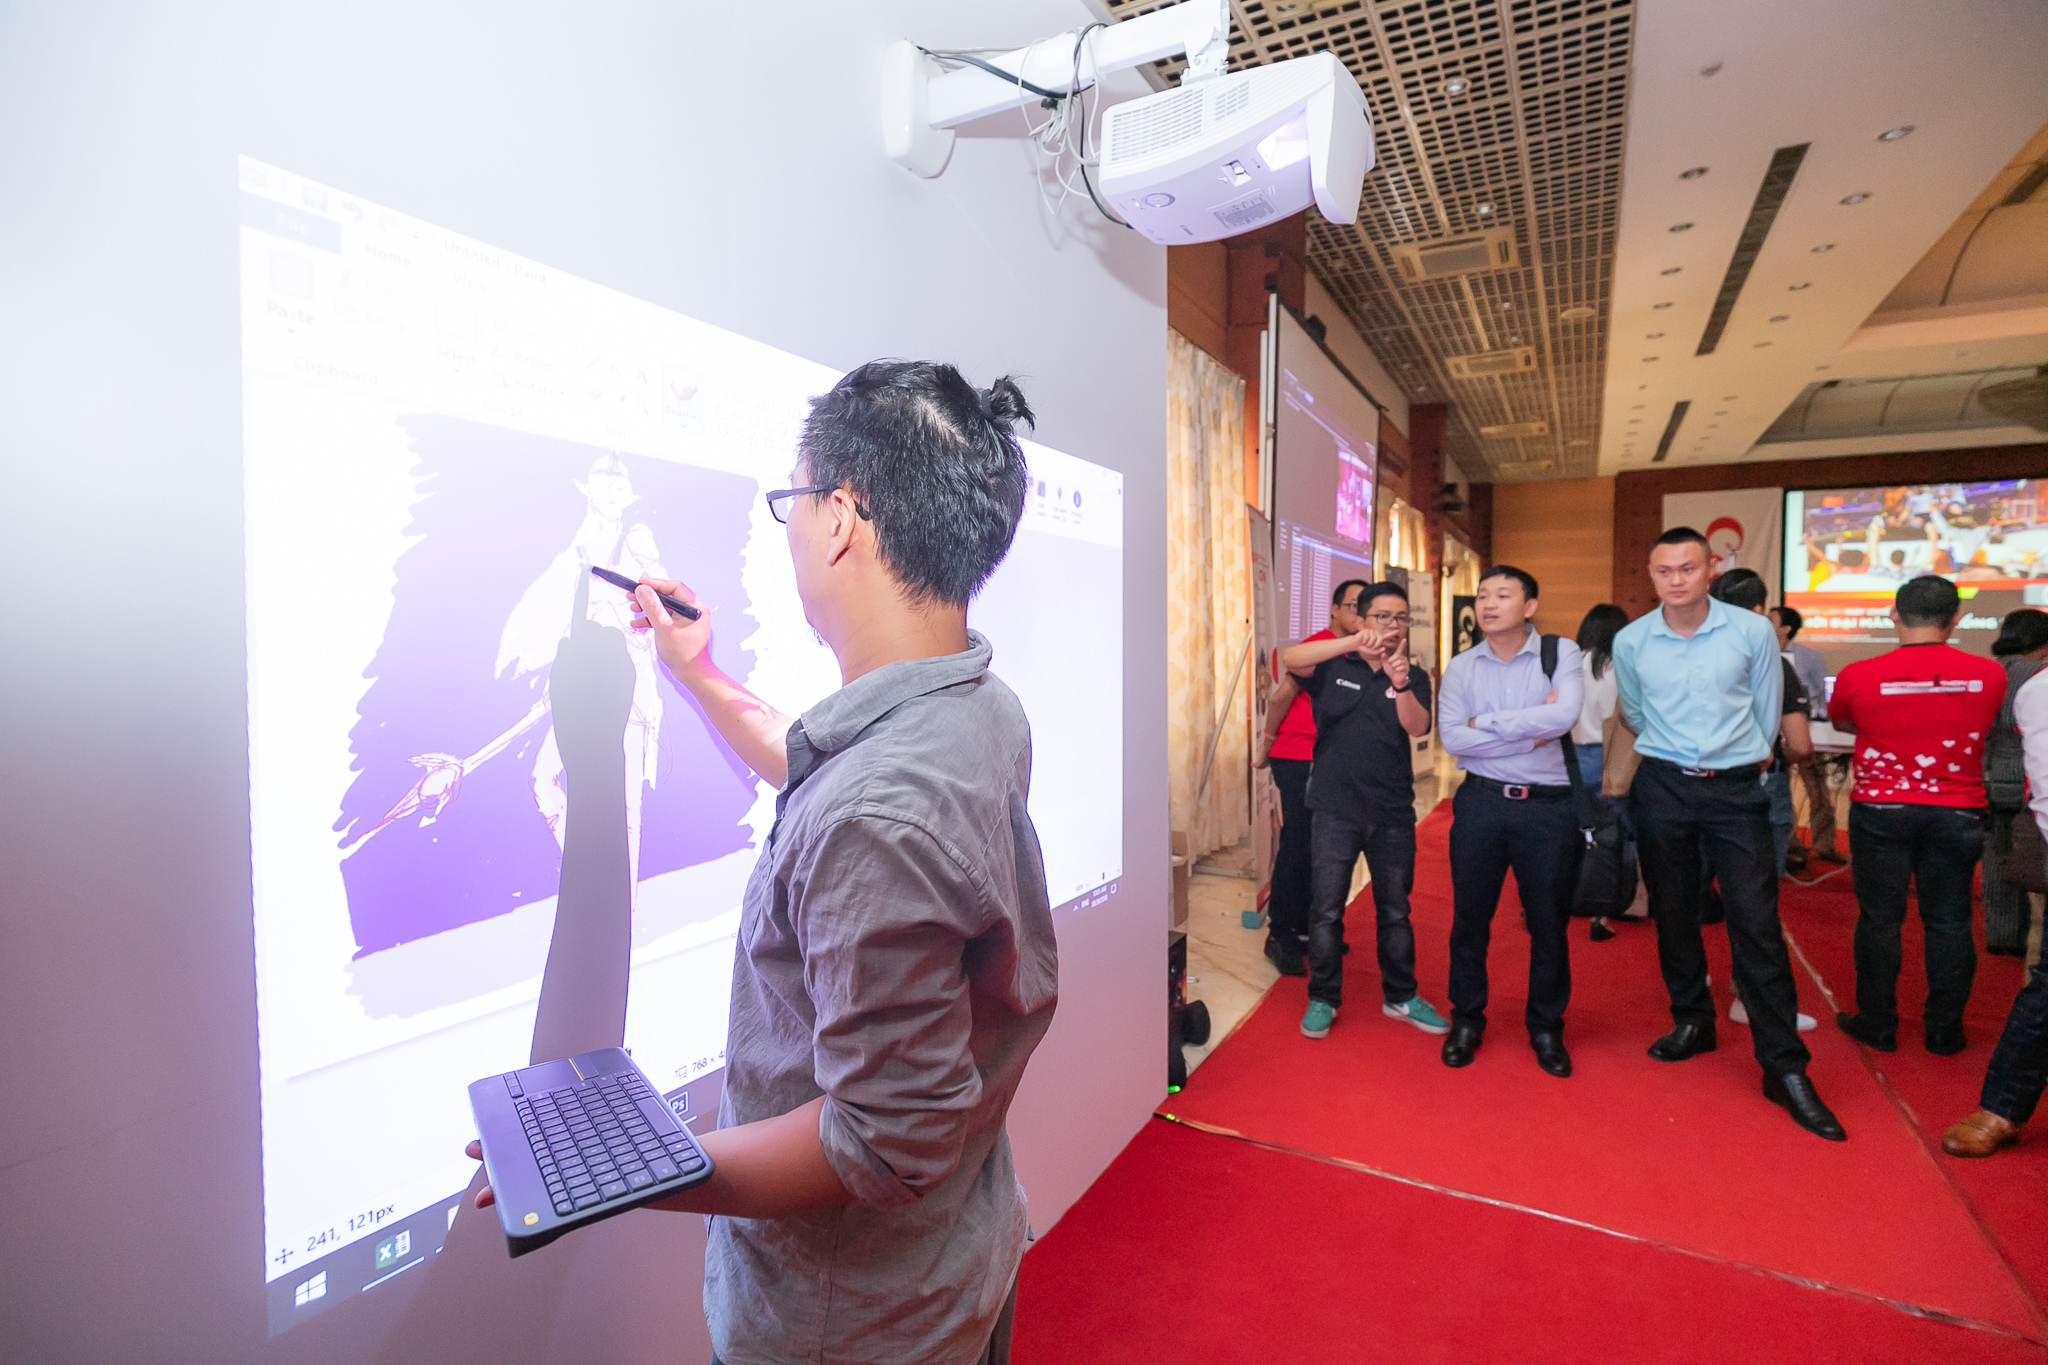 Canon trình diễn những máy chiếu đỉnh nhất làm nên “Thời đại màn hình khổng lồ” tại Hà Nội